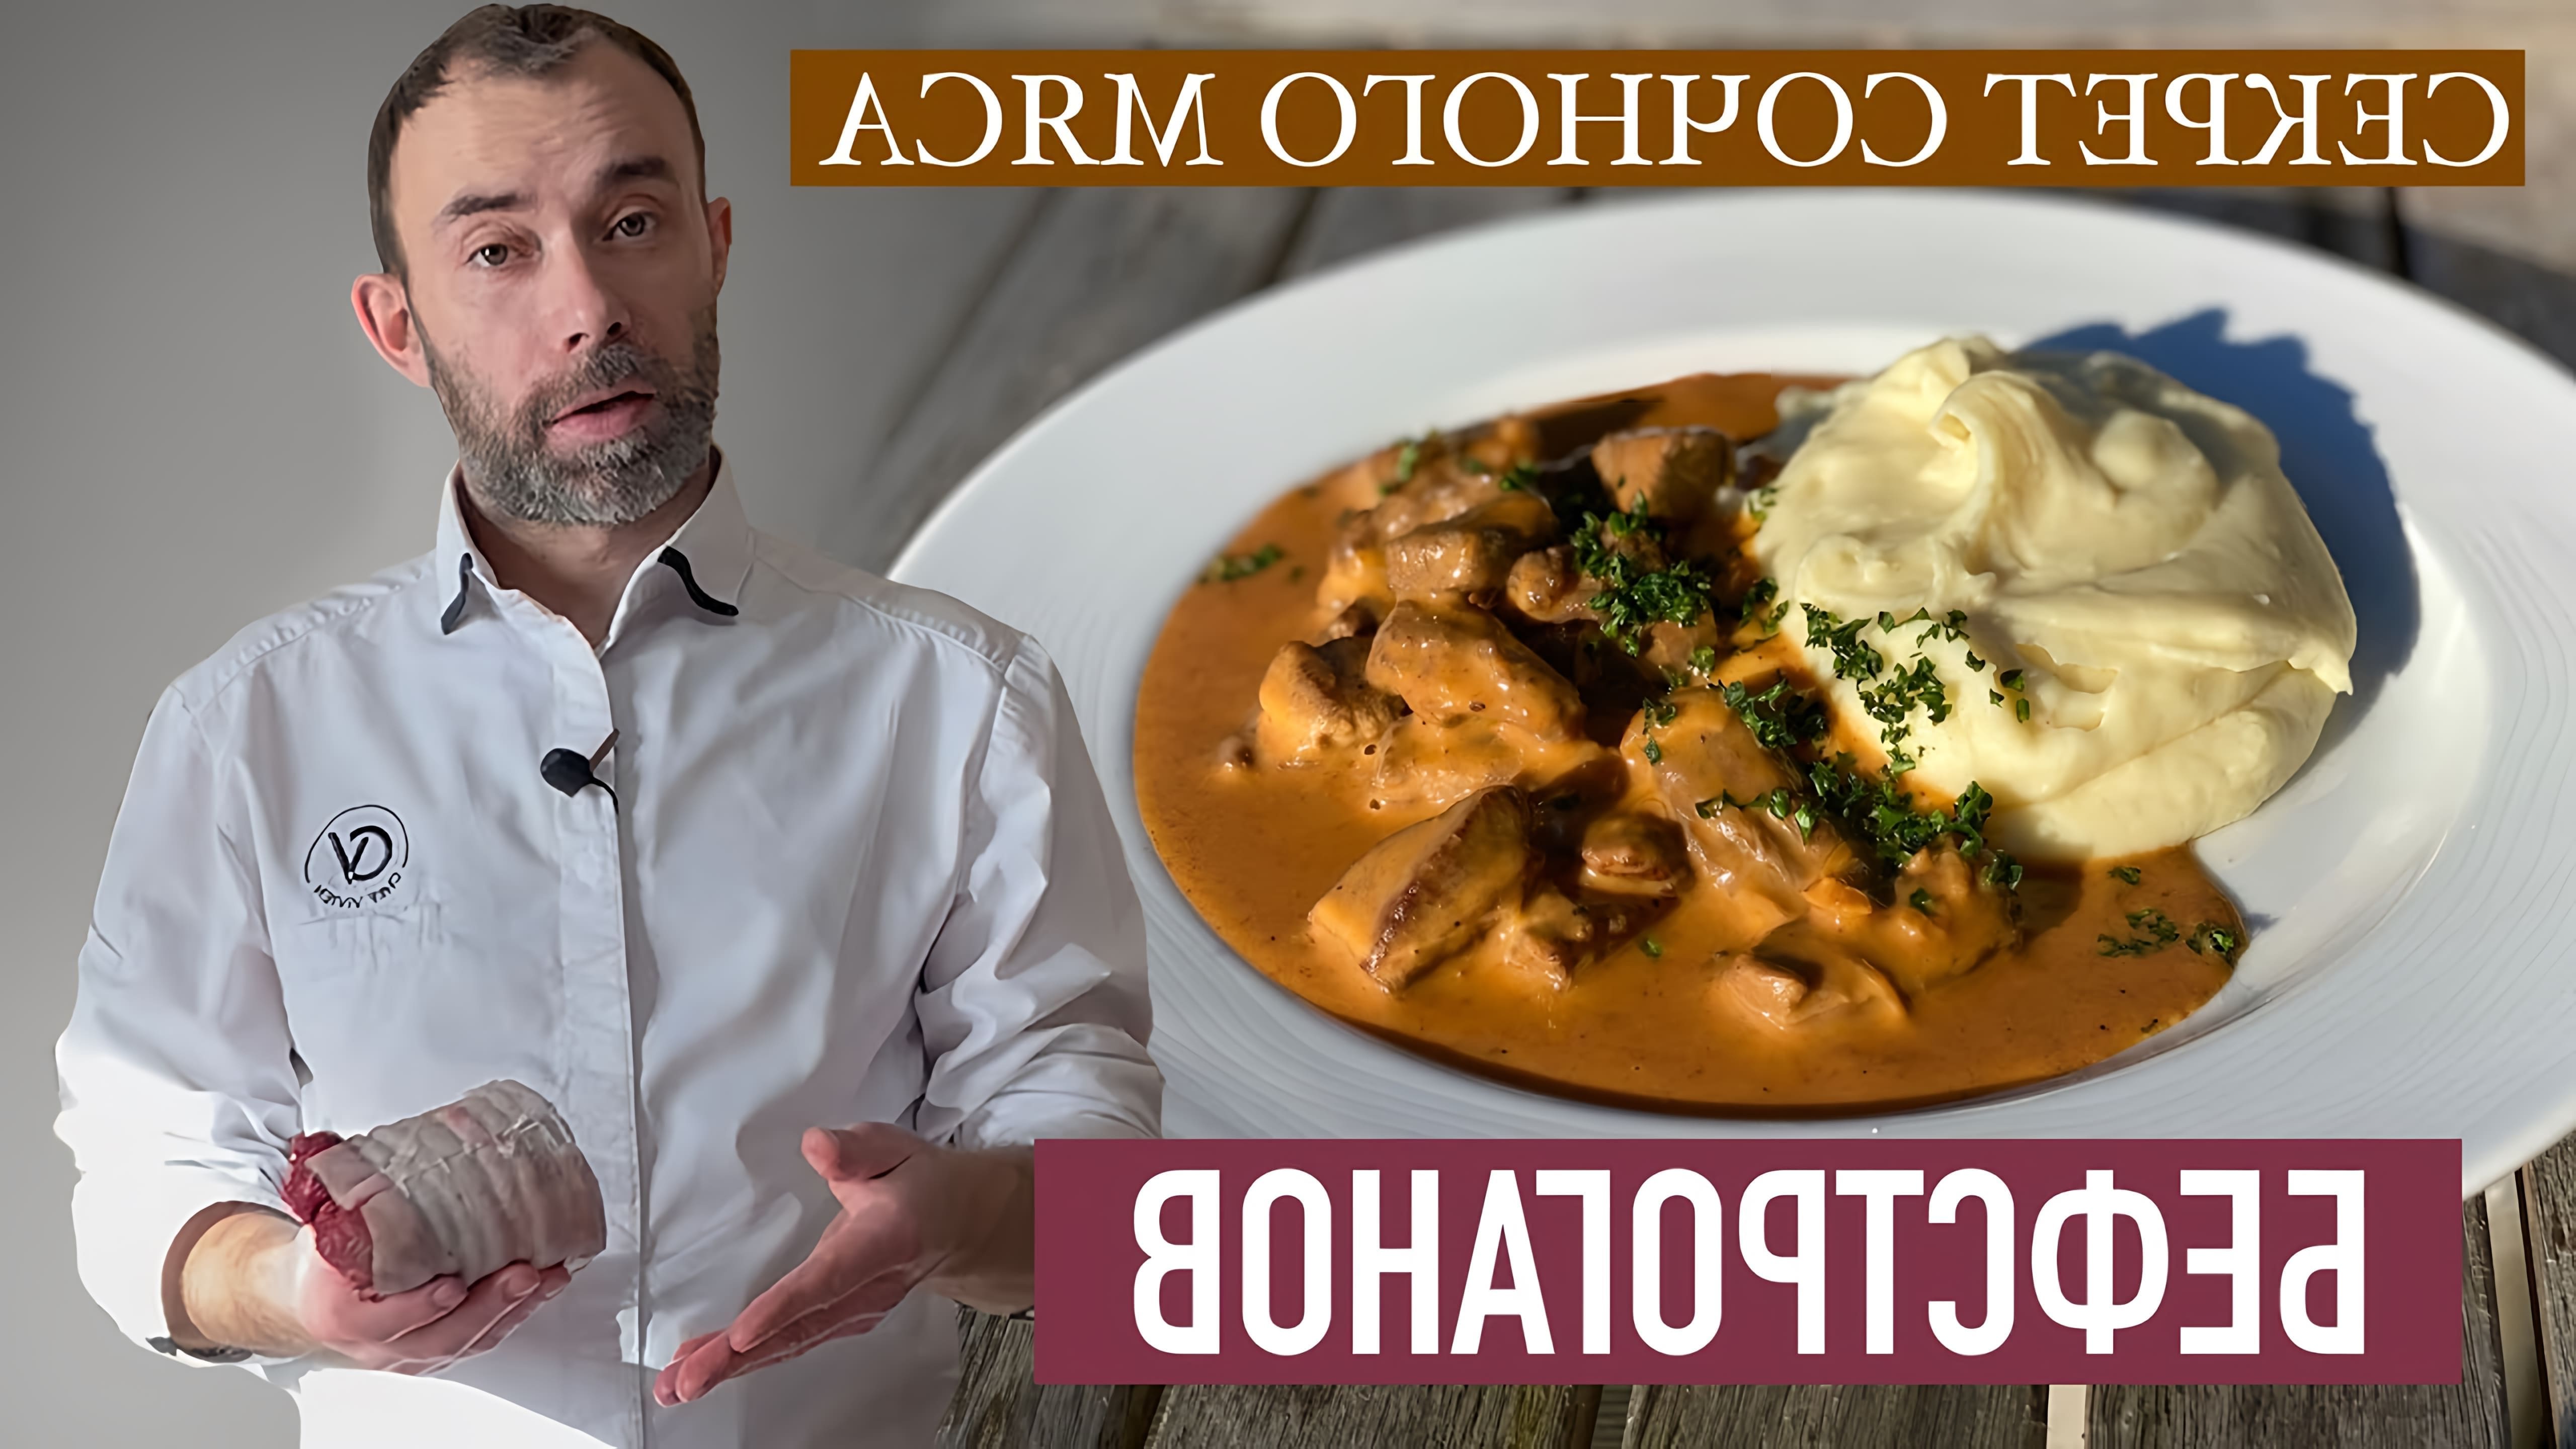 В этом видео демонстрируется рецепт приготовления бефстроганов, который, по словам автора, является шедевром русской или французской кухни